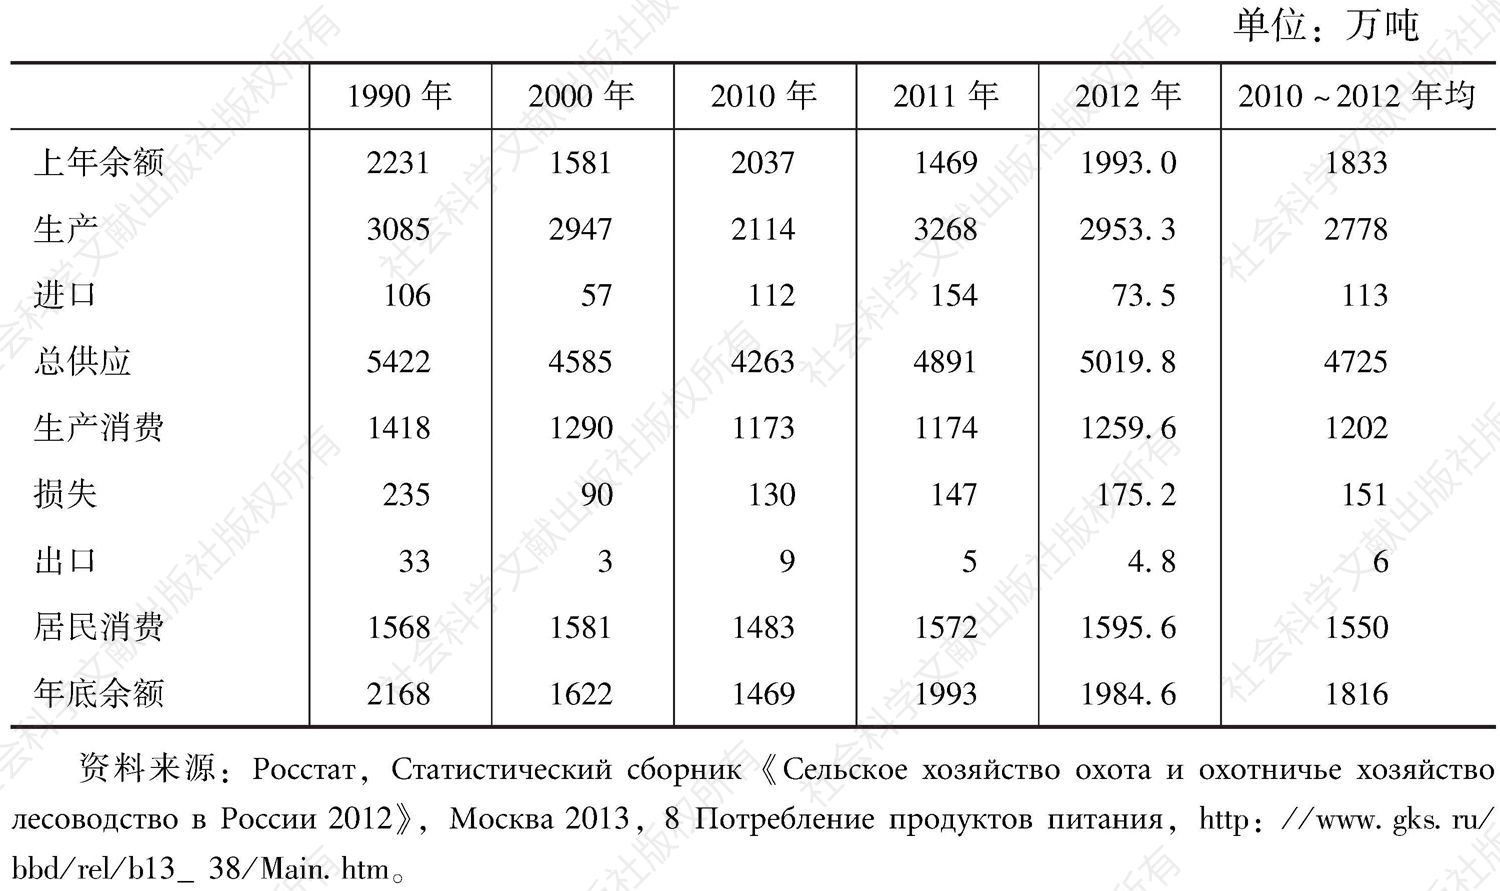 表2-31 俄罗斯的土豆生产和消费统计